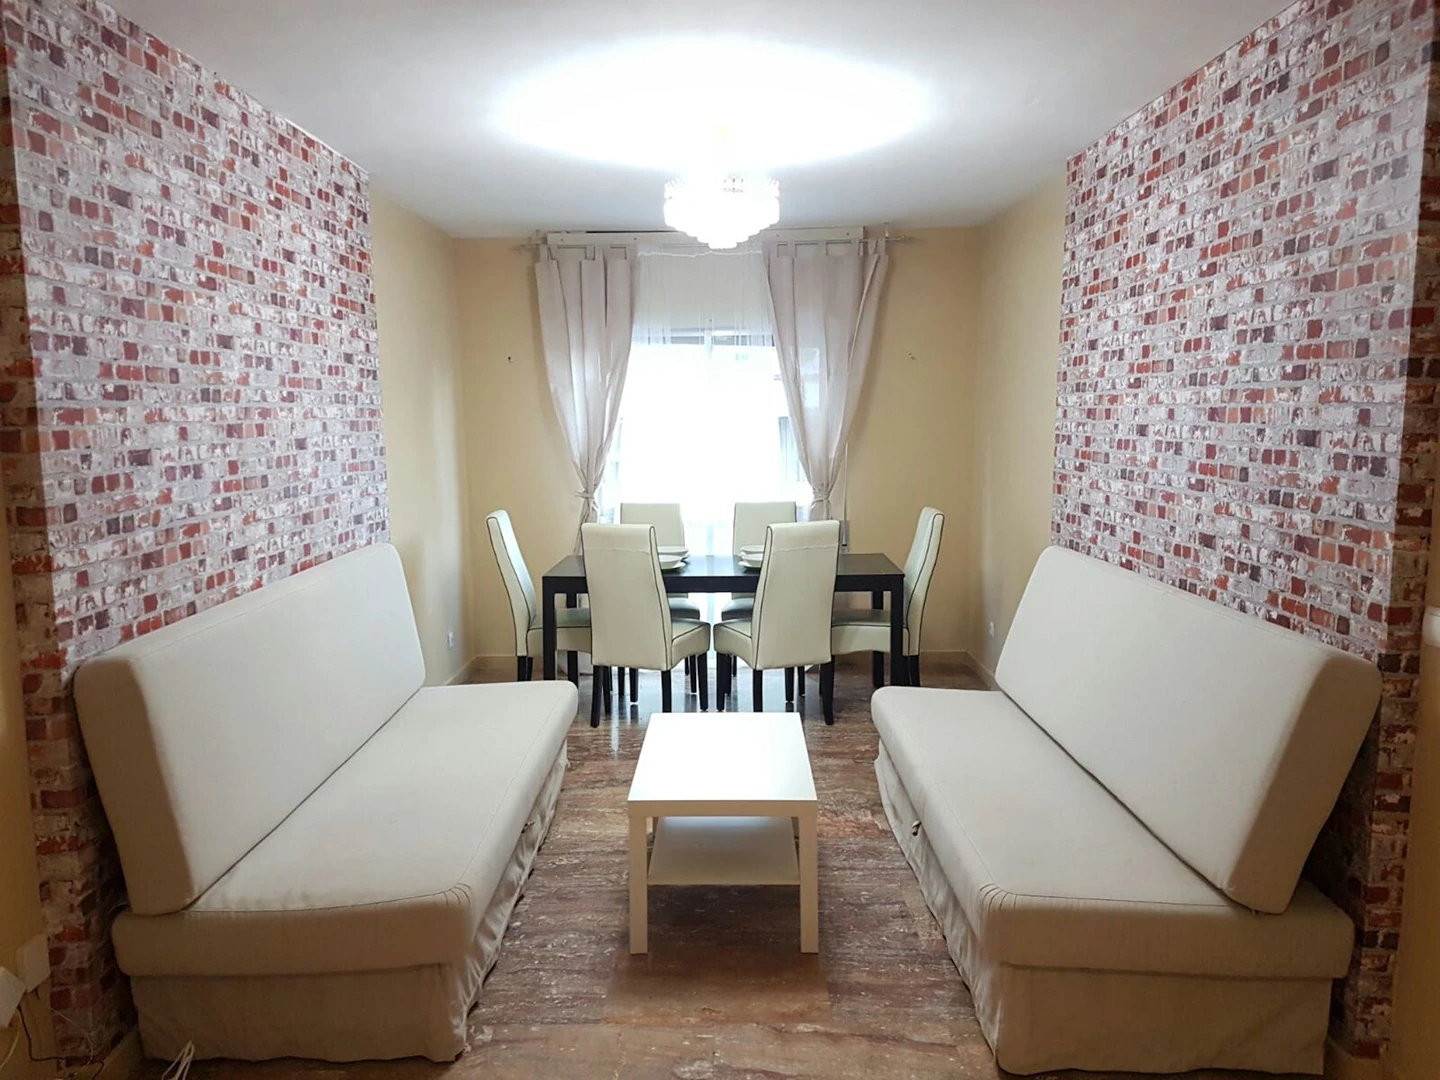 Alquiler de habitaciones por meses en Córdoba